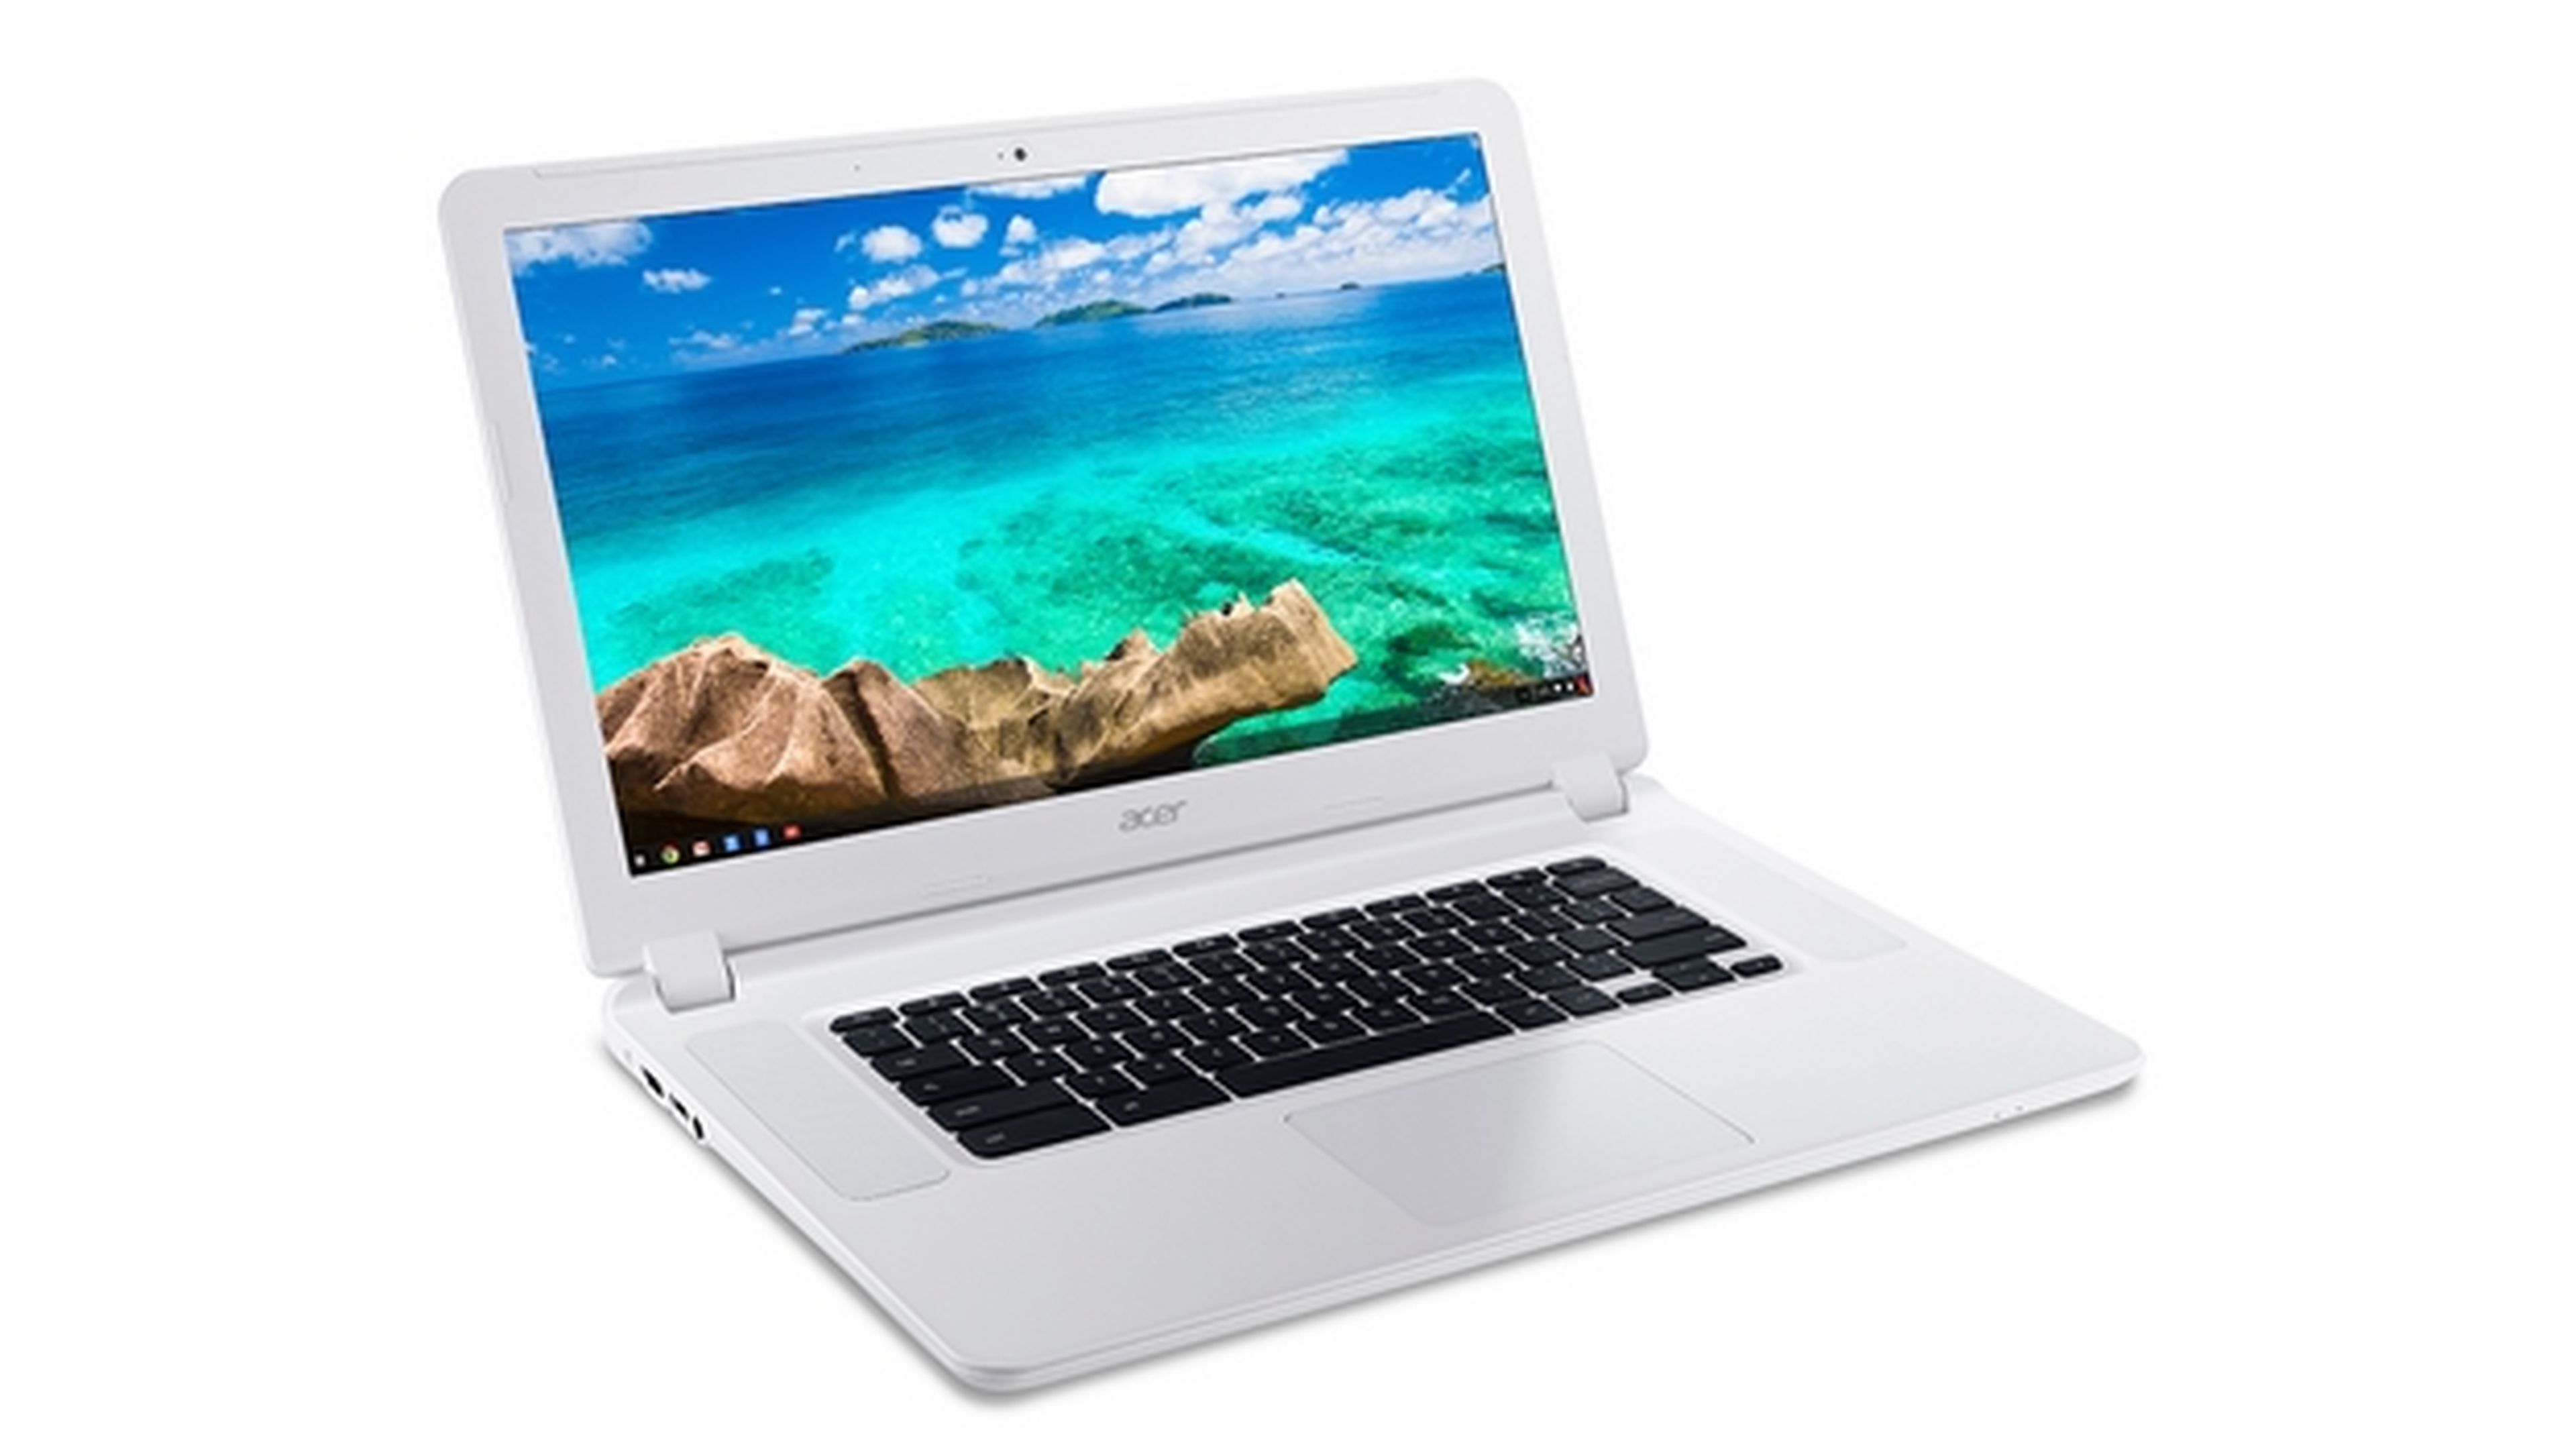 Acer desvela el Chromebook más grande del mundo, Acer Chromebook 15, con pantalla de 15 pulgadas, en CES 2015.